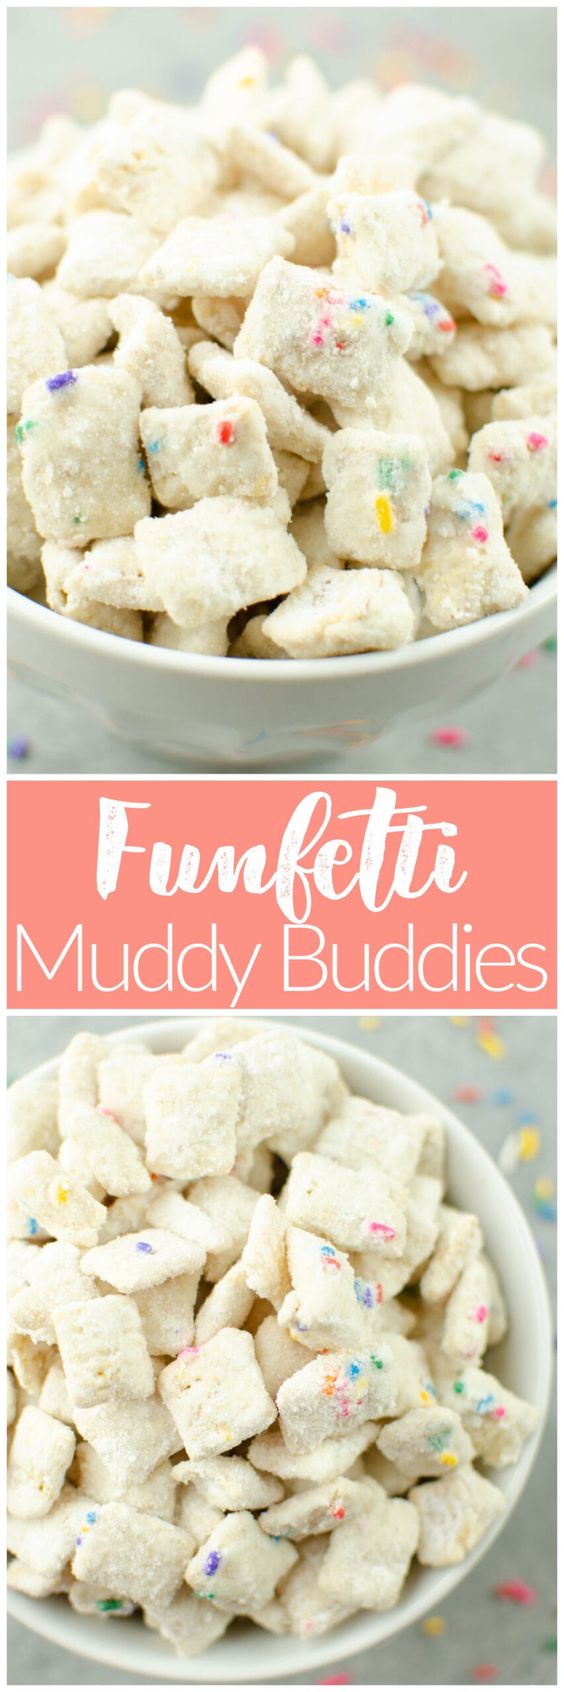 Funfetti-Muddy-Buddies